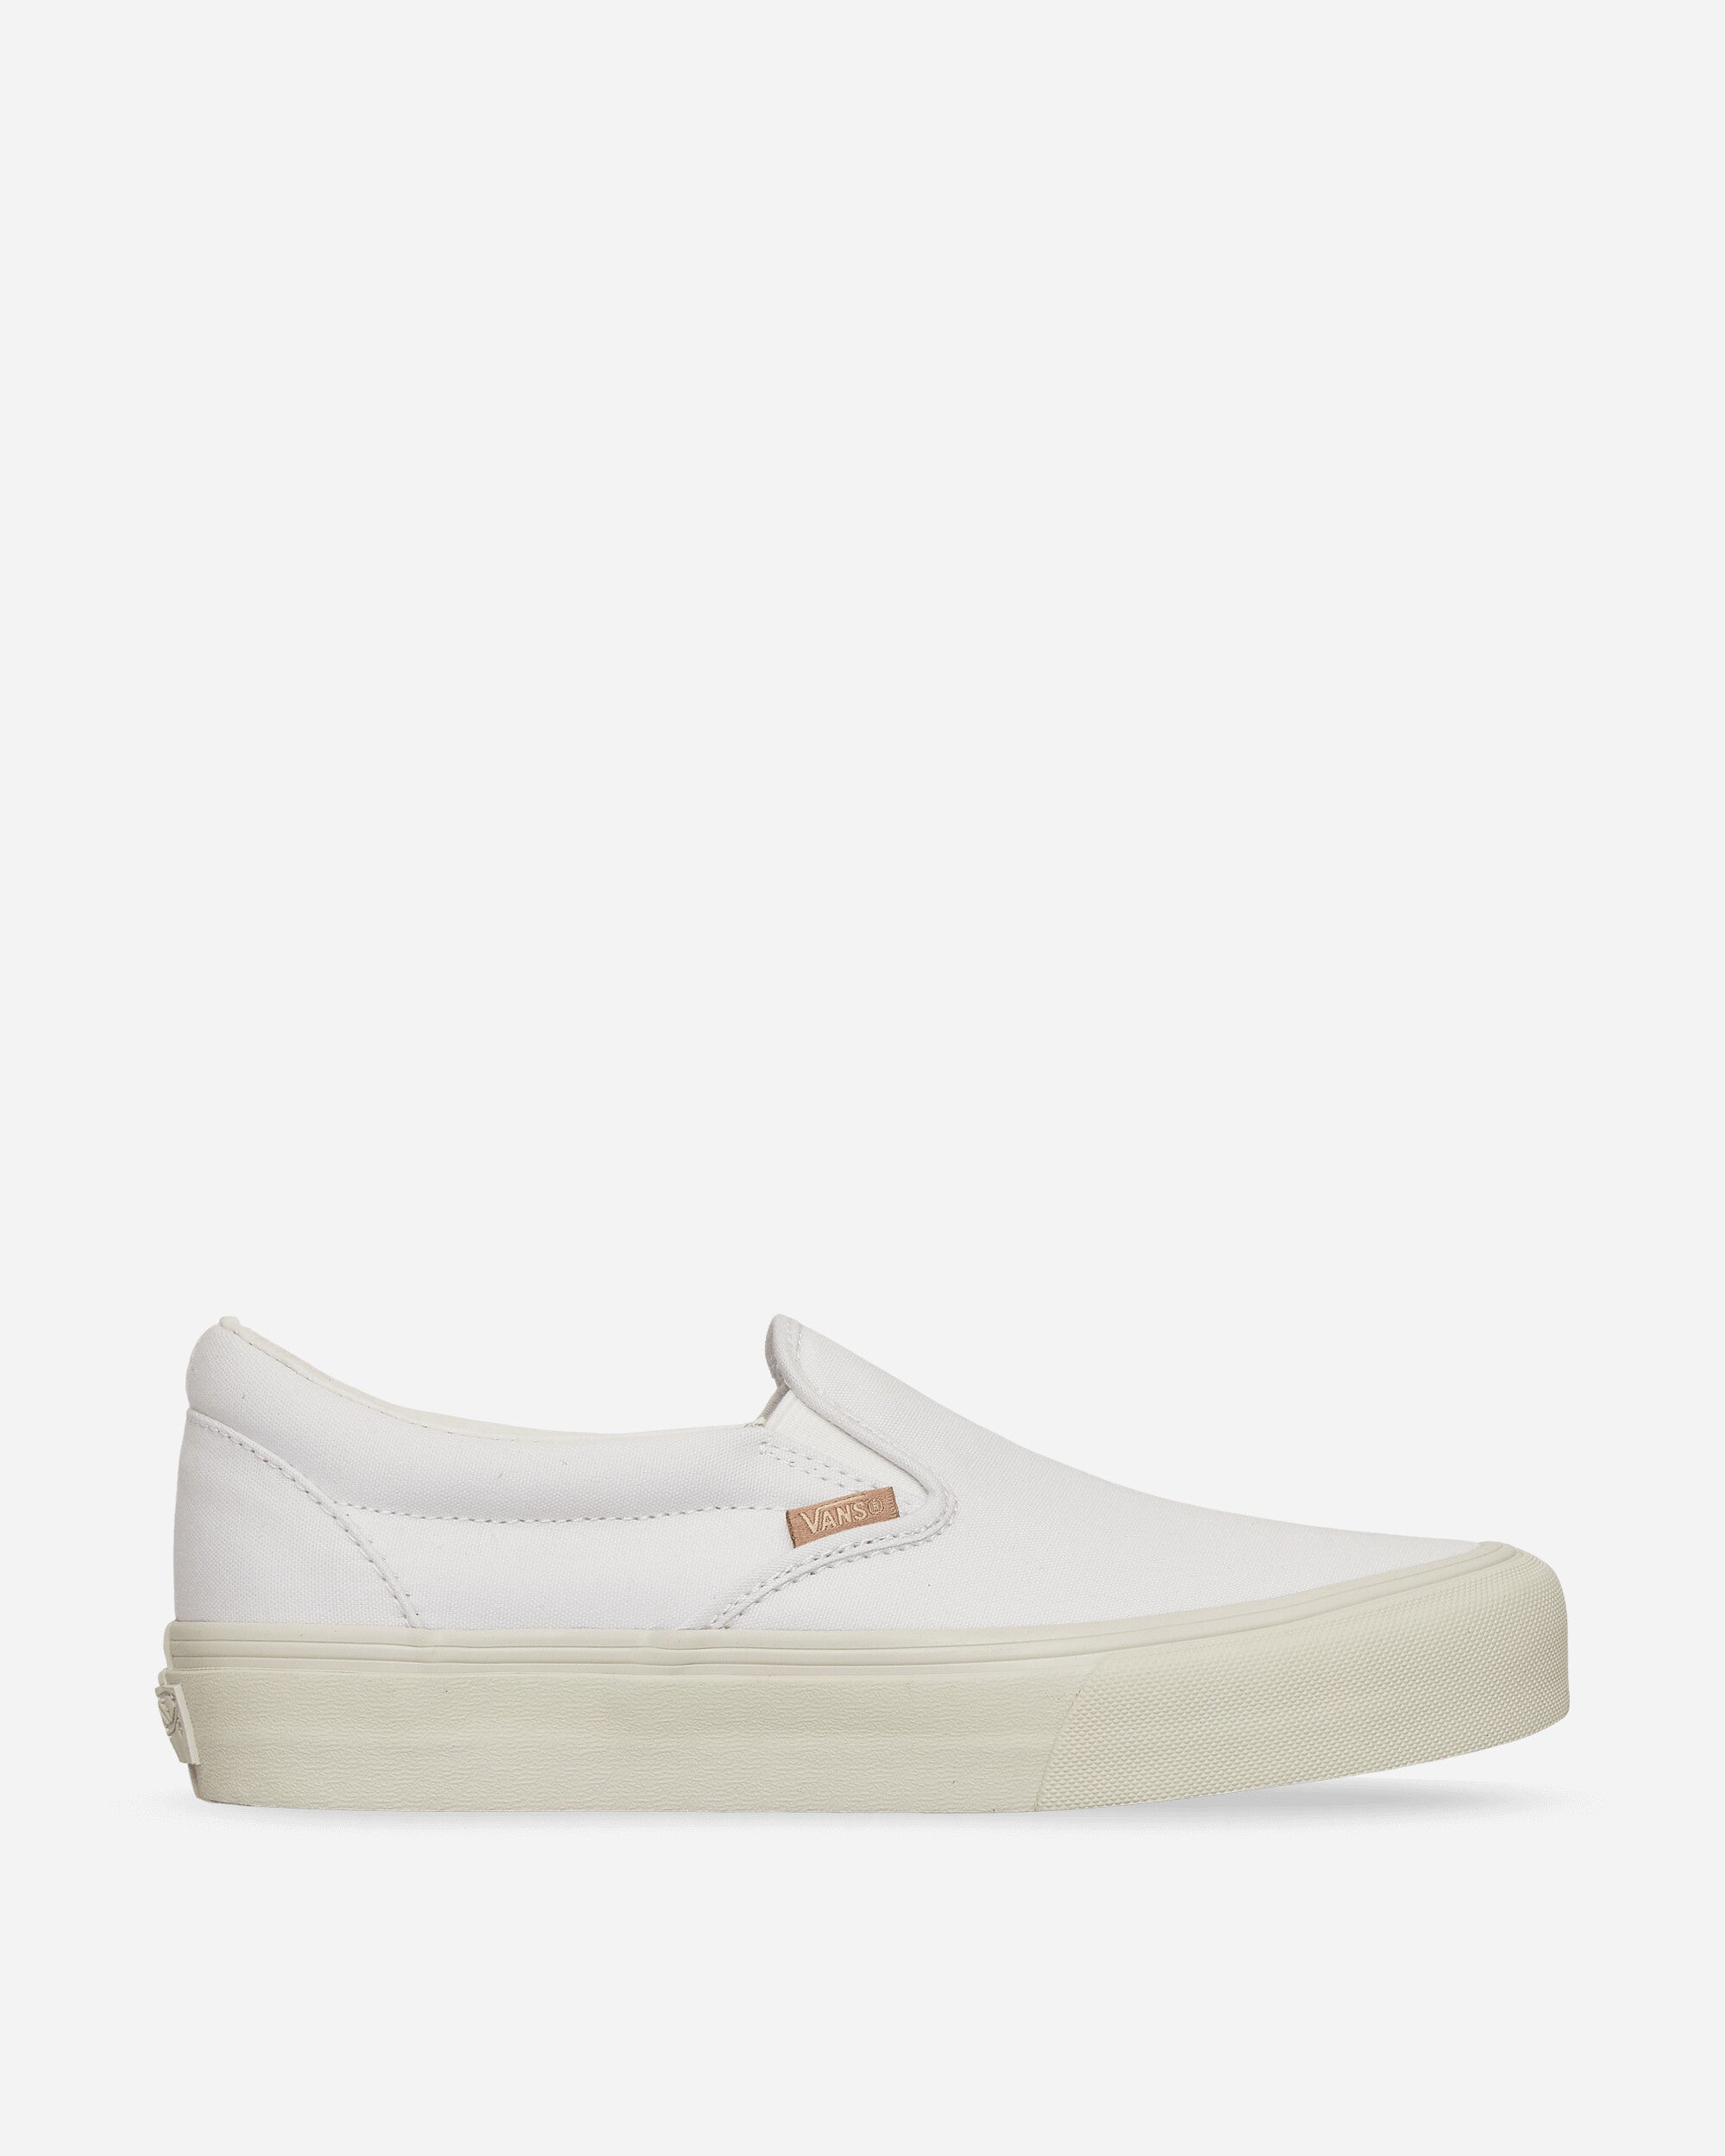 JJJJound Classic Slip-On LX Sneakers True White